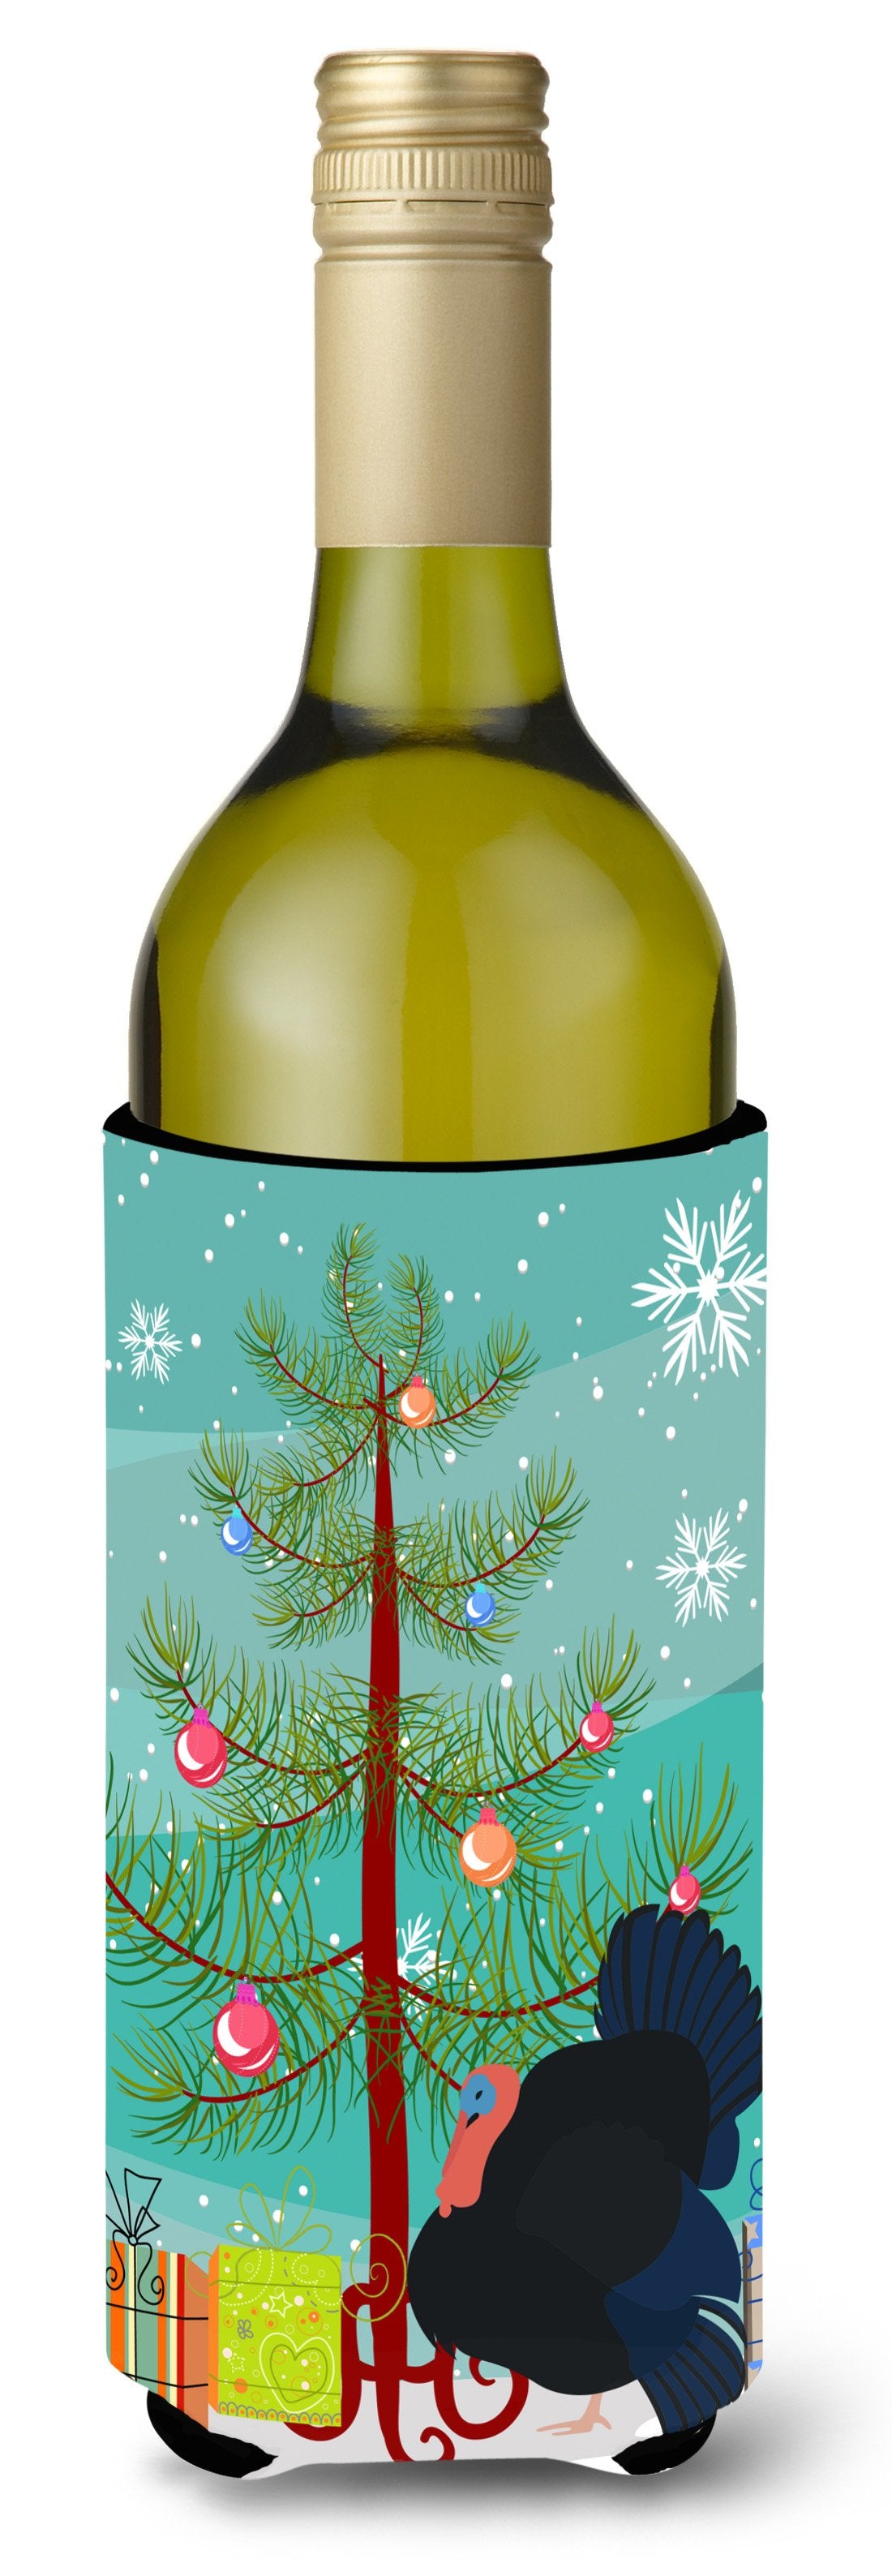 Norfolk Black Turkey Christmas Wine Bottle Beverge Insulator Hugger BB9352LITERK by Caroline's Treasures